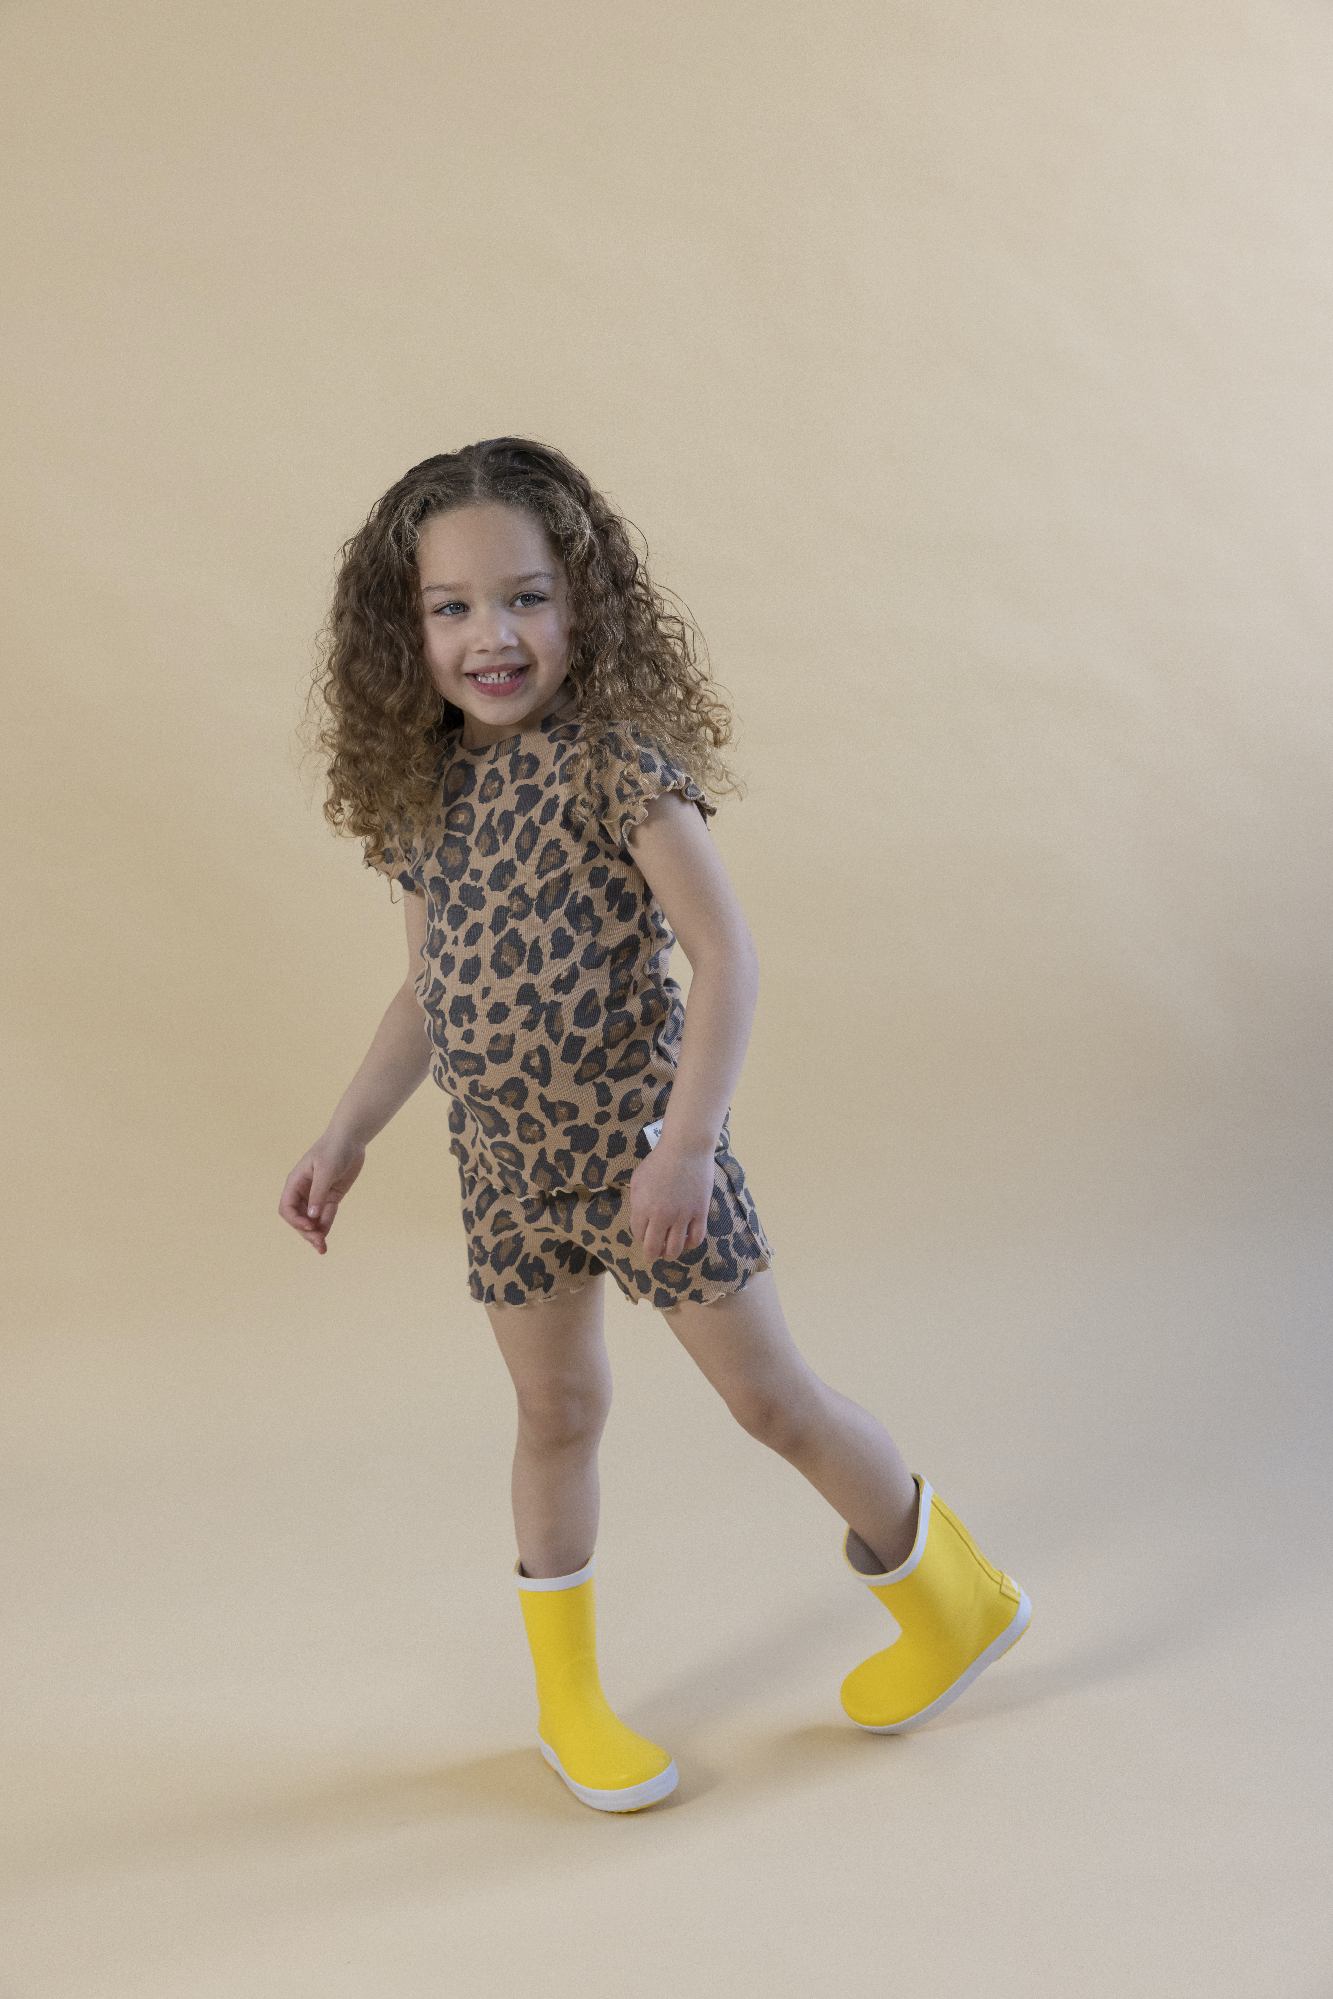 Feetje Leopard Lex - Premium Sleepwear by FEETJE - Kids